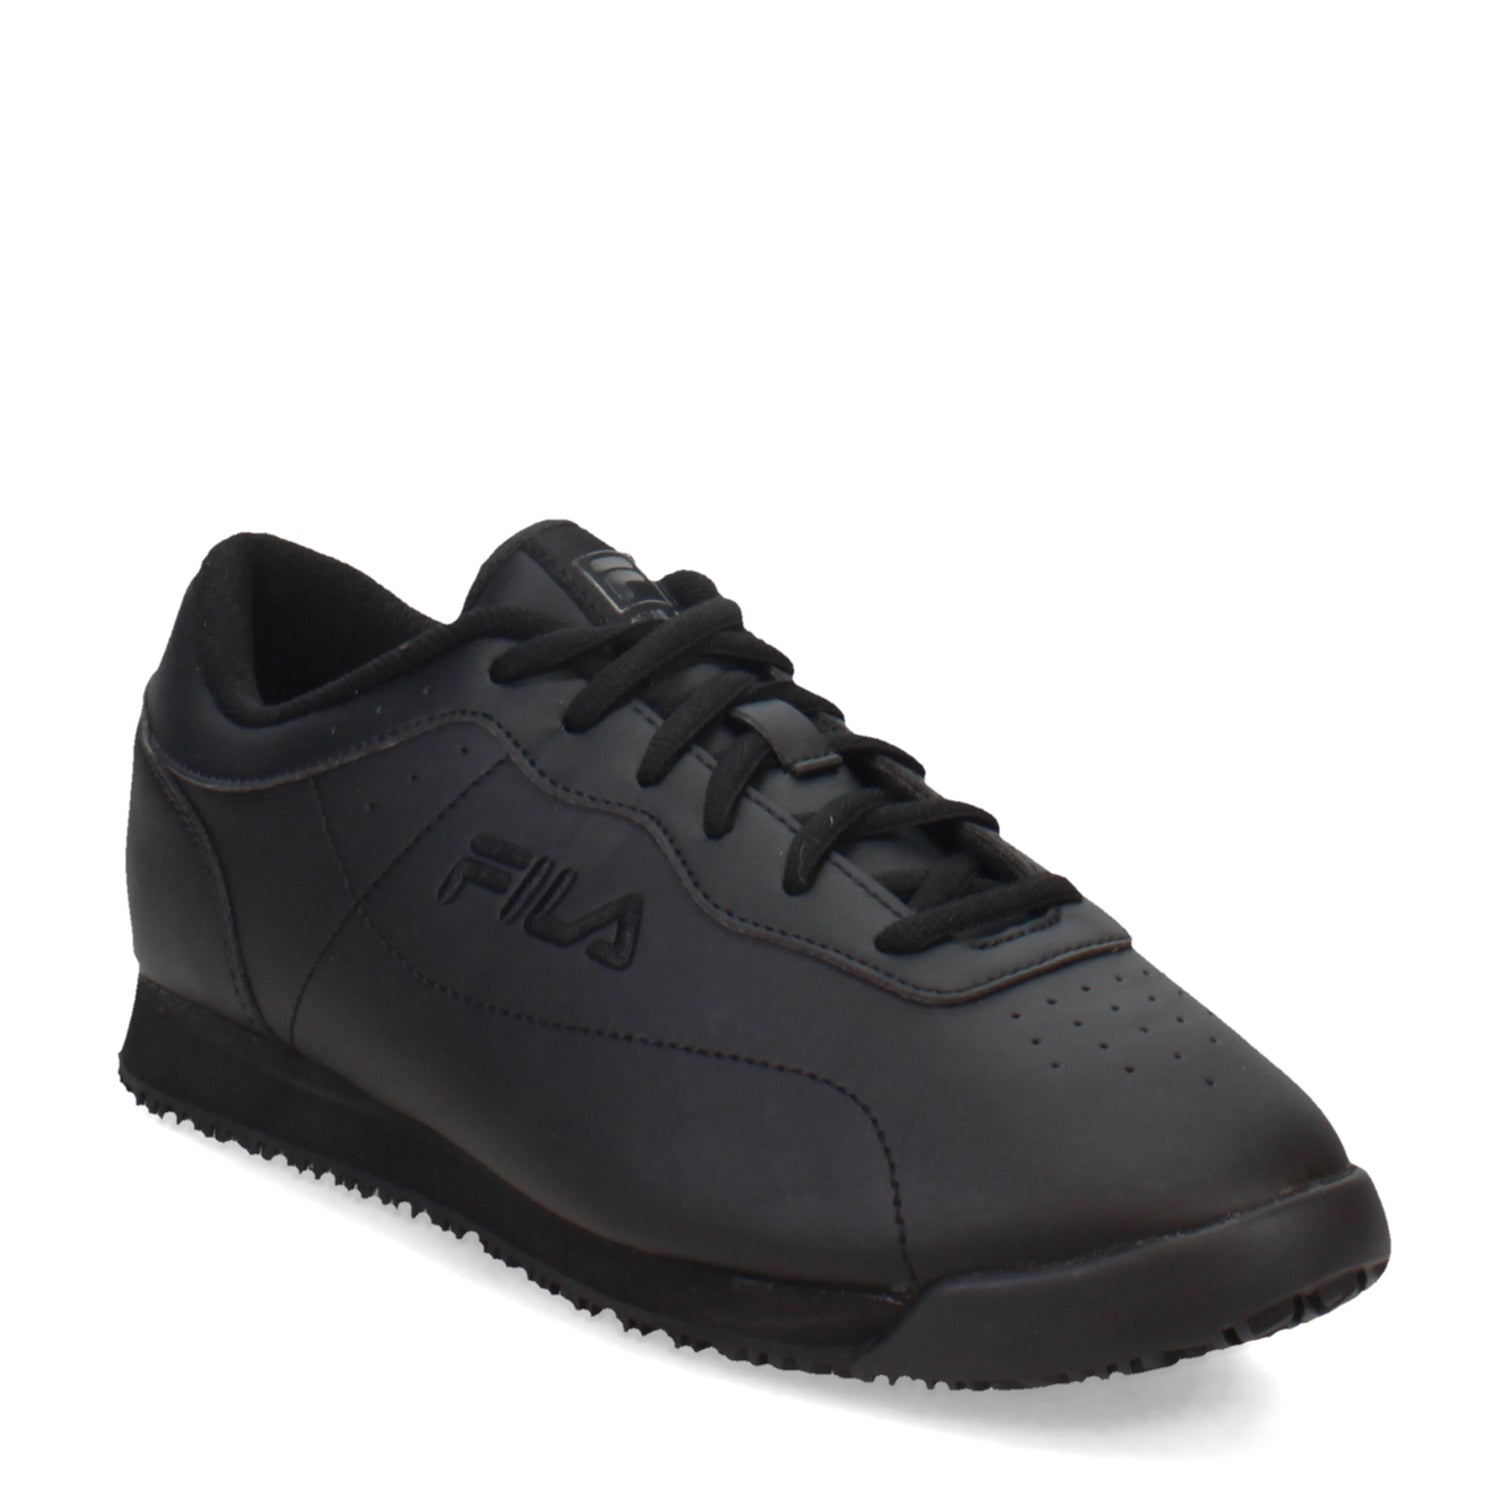 Peltz Shoes  Women's Fila Memory Viable SR Work Sneaker - Wide Width Black 5SLW5000-001